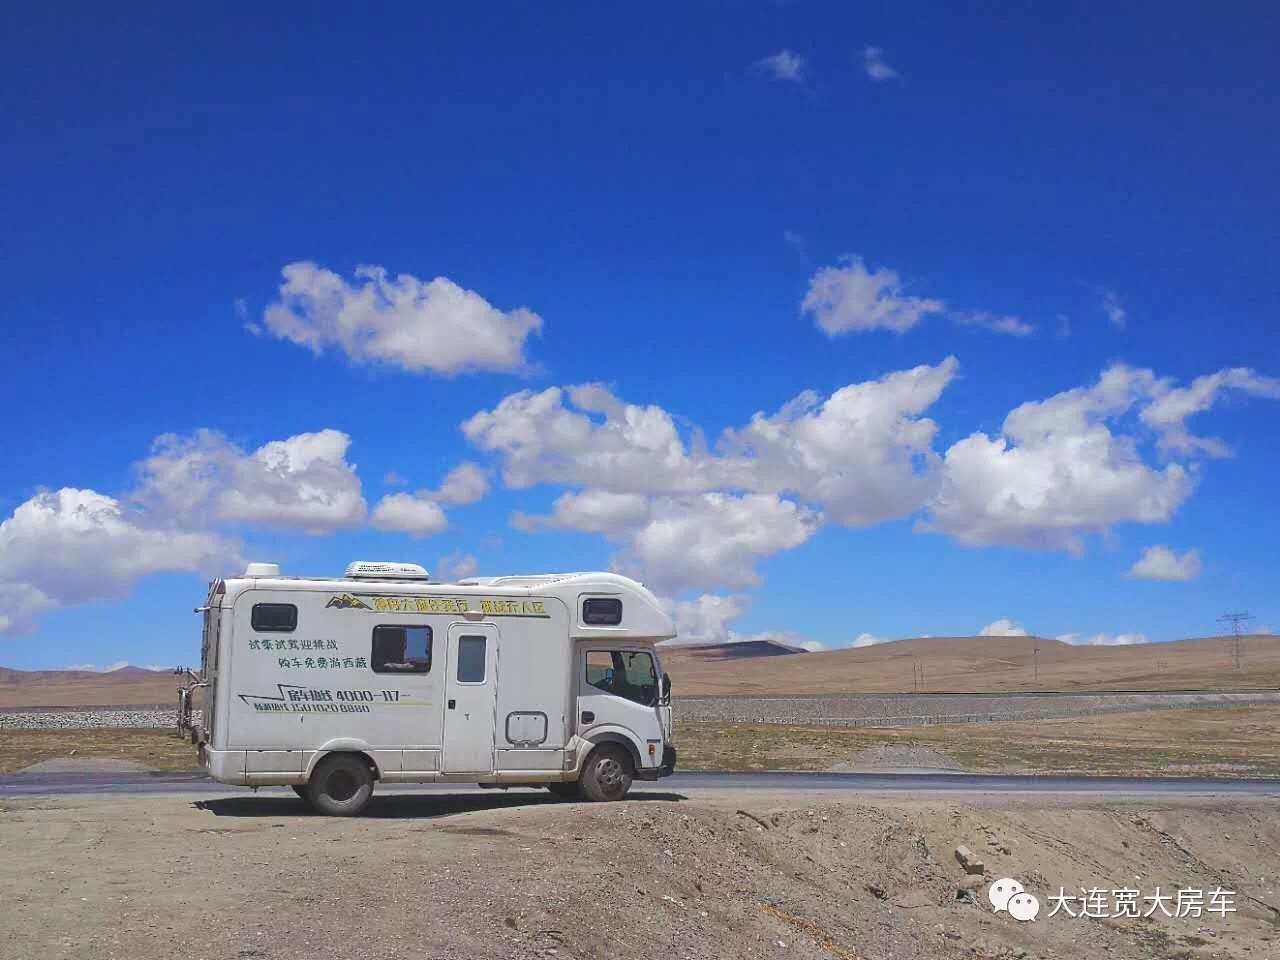 日产尼桑凯普斯达房车客户西藏之旅